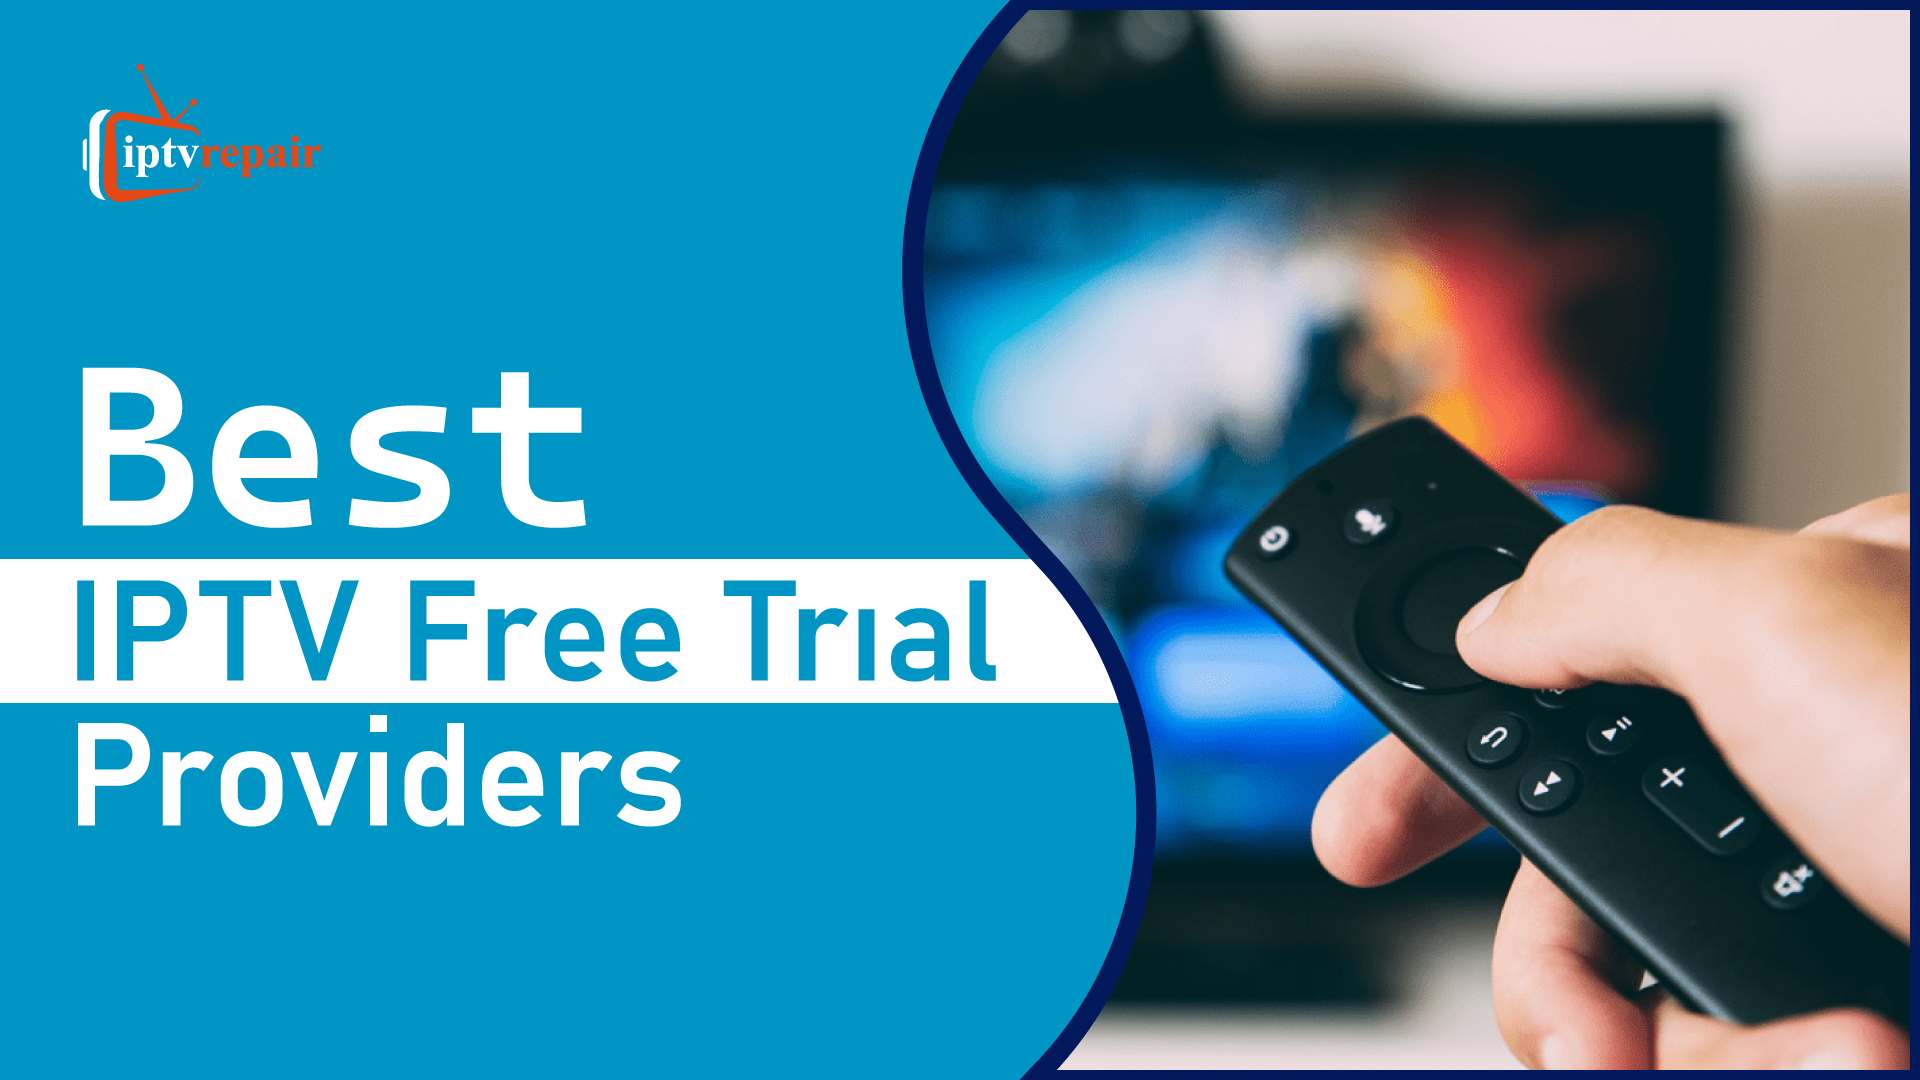 Best IPTV Free Trial Providers